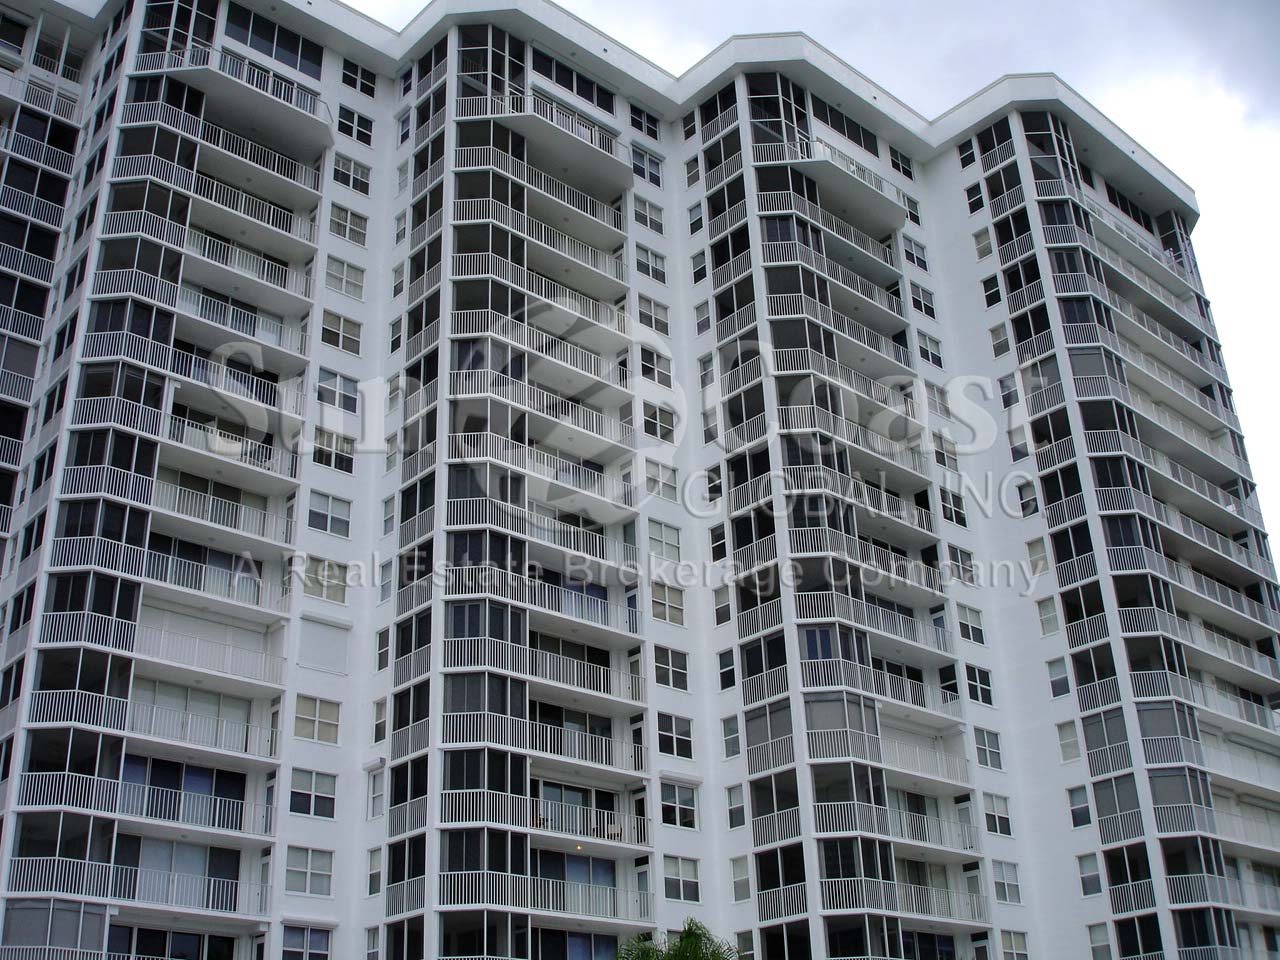 St Lucia Condominium Building with Lanais